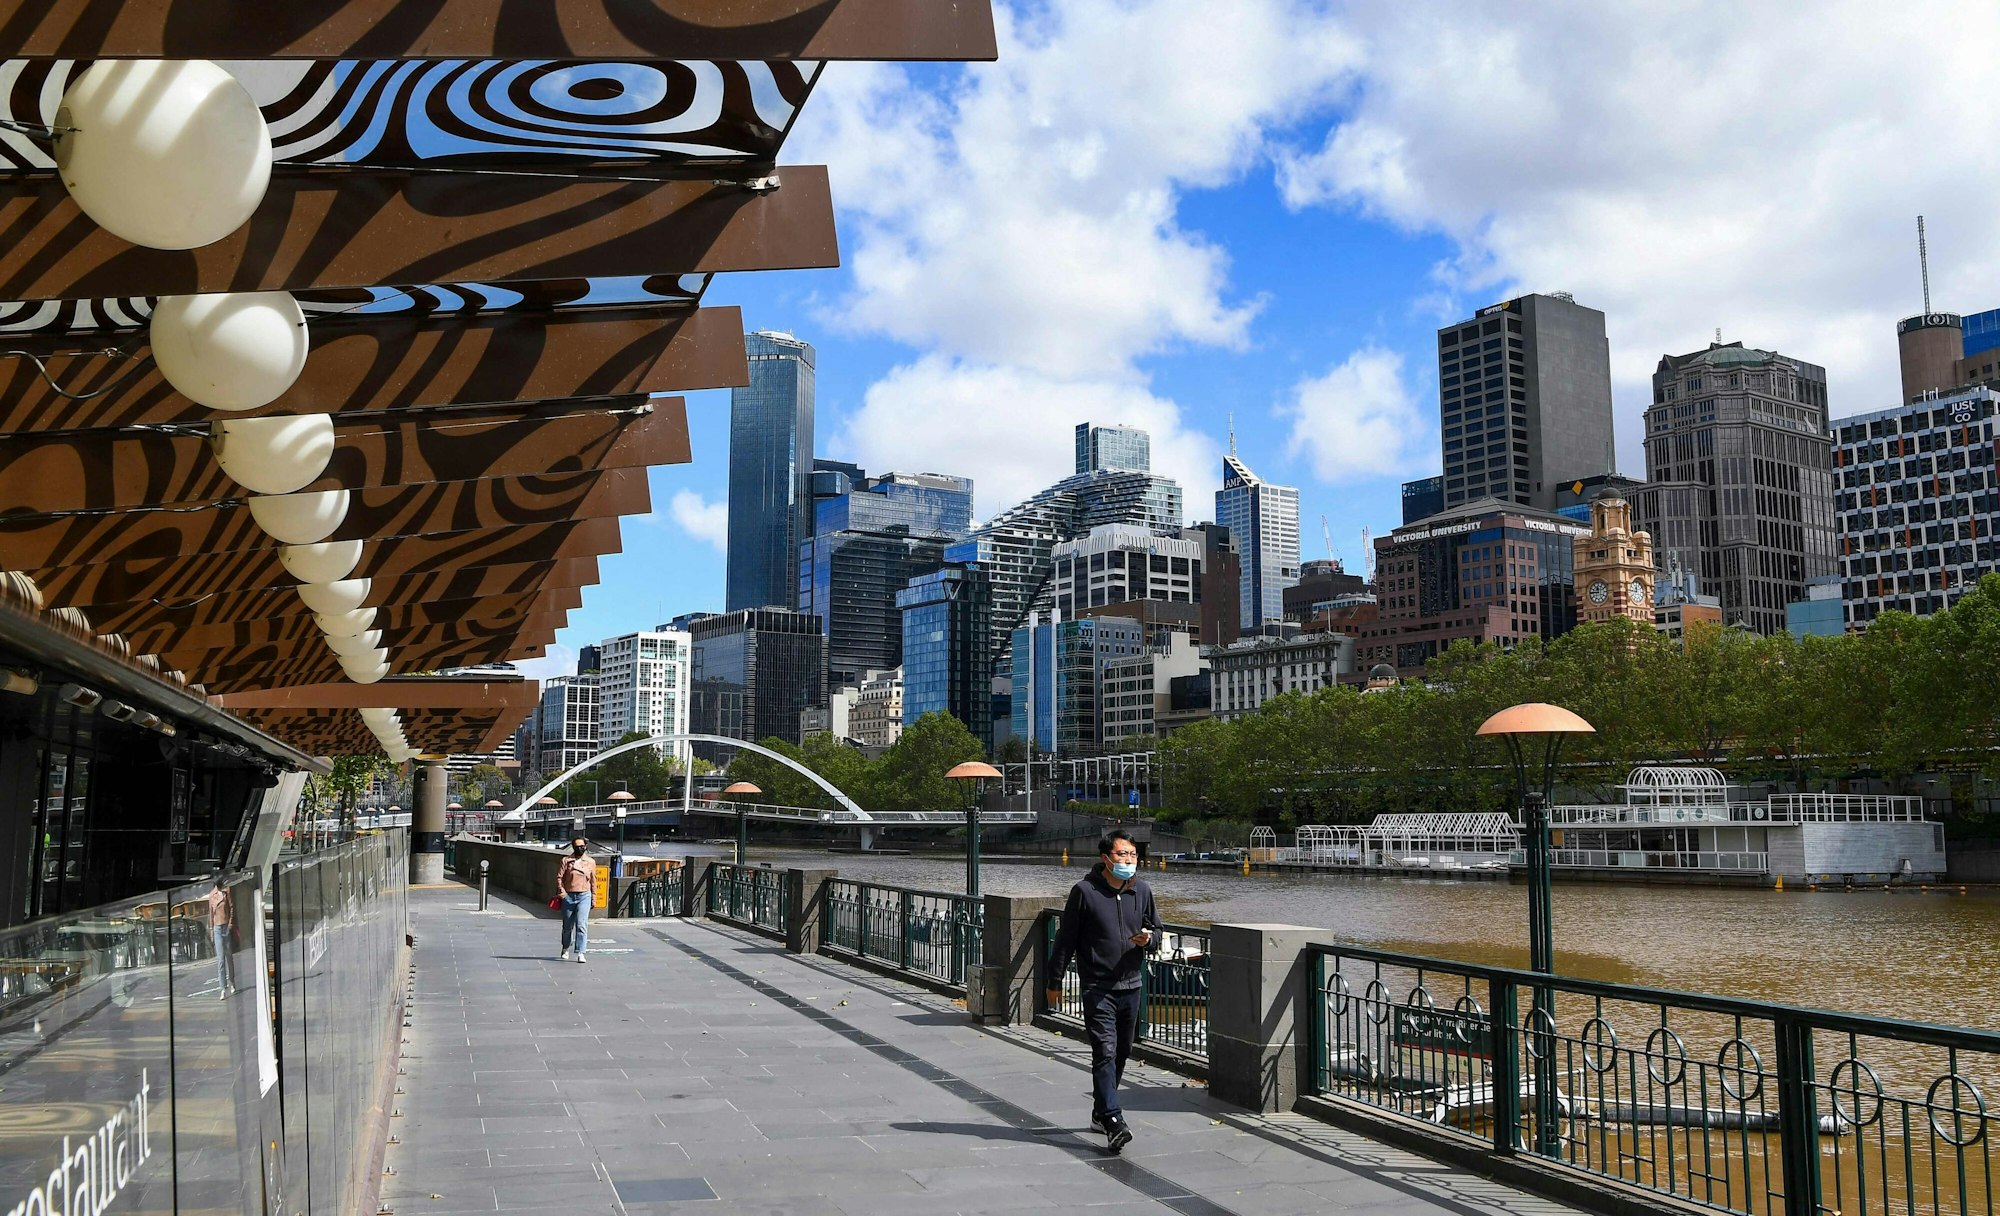 Melbourne im Lockdown – die australische Metropole befindet sich zusammengezählt seit 246 Tagen im Lockdown. Ein trauriger Rekord.